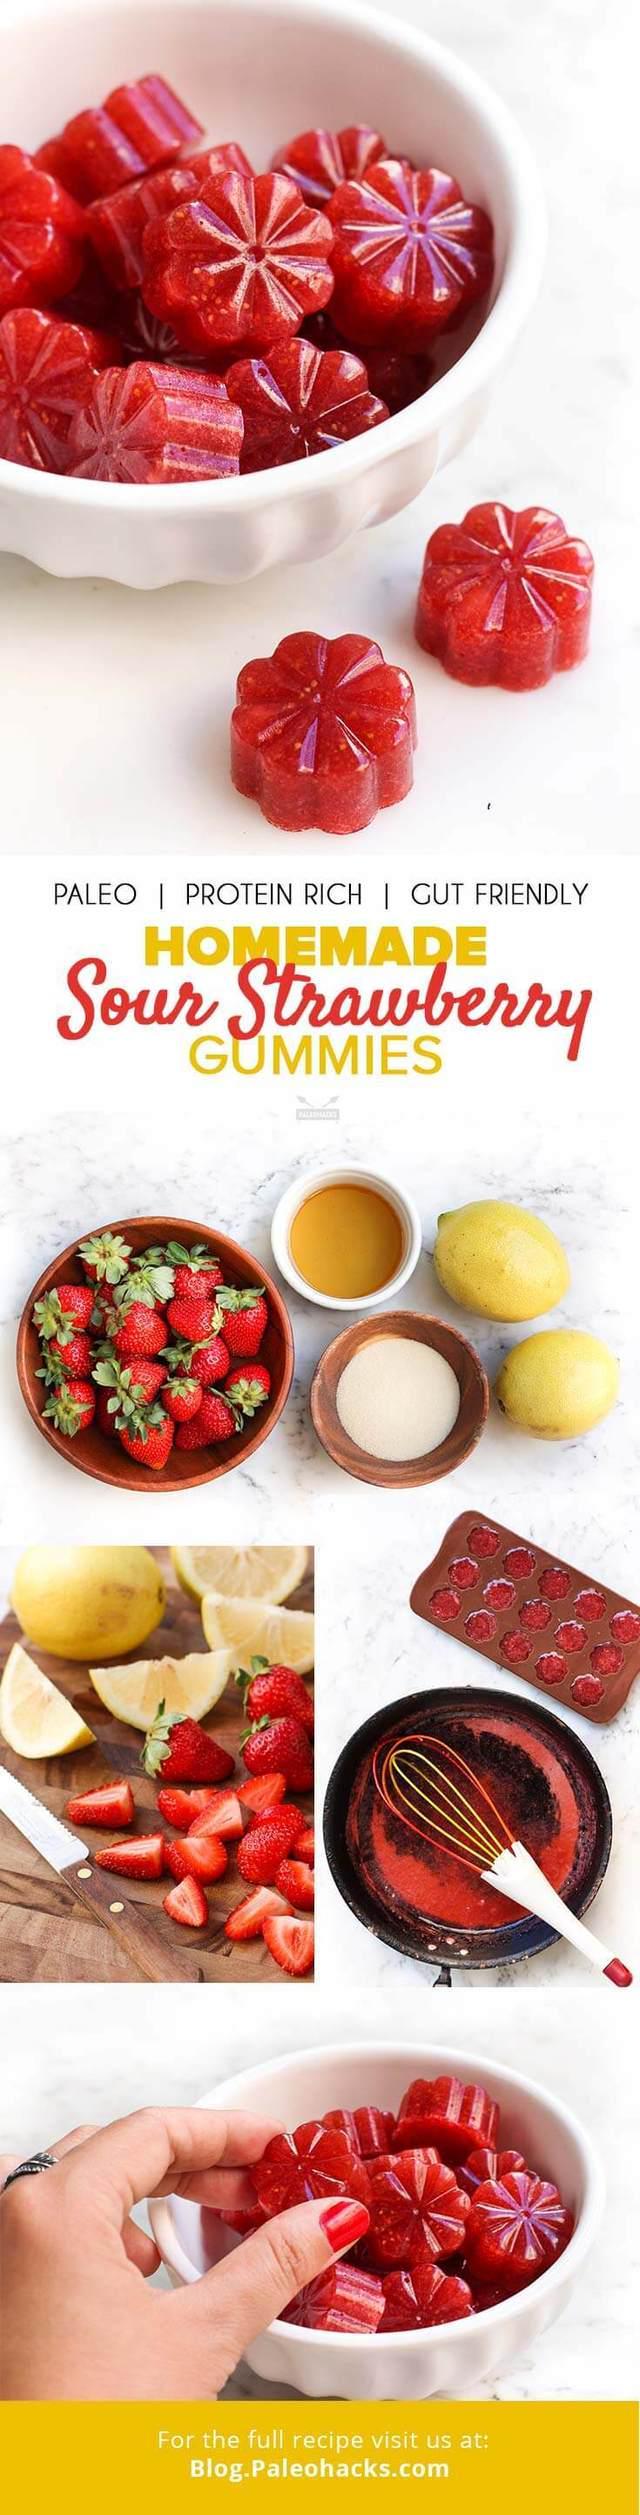 รูปภาพ:https://d39ziaow49lrgk.cloudfront.net/wp-content/uploads/2017/02/TRAD-PIN-Homemade-Sour-Strawberry-Gummies.jpg